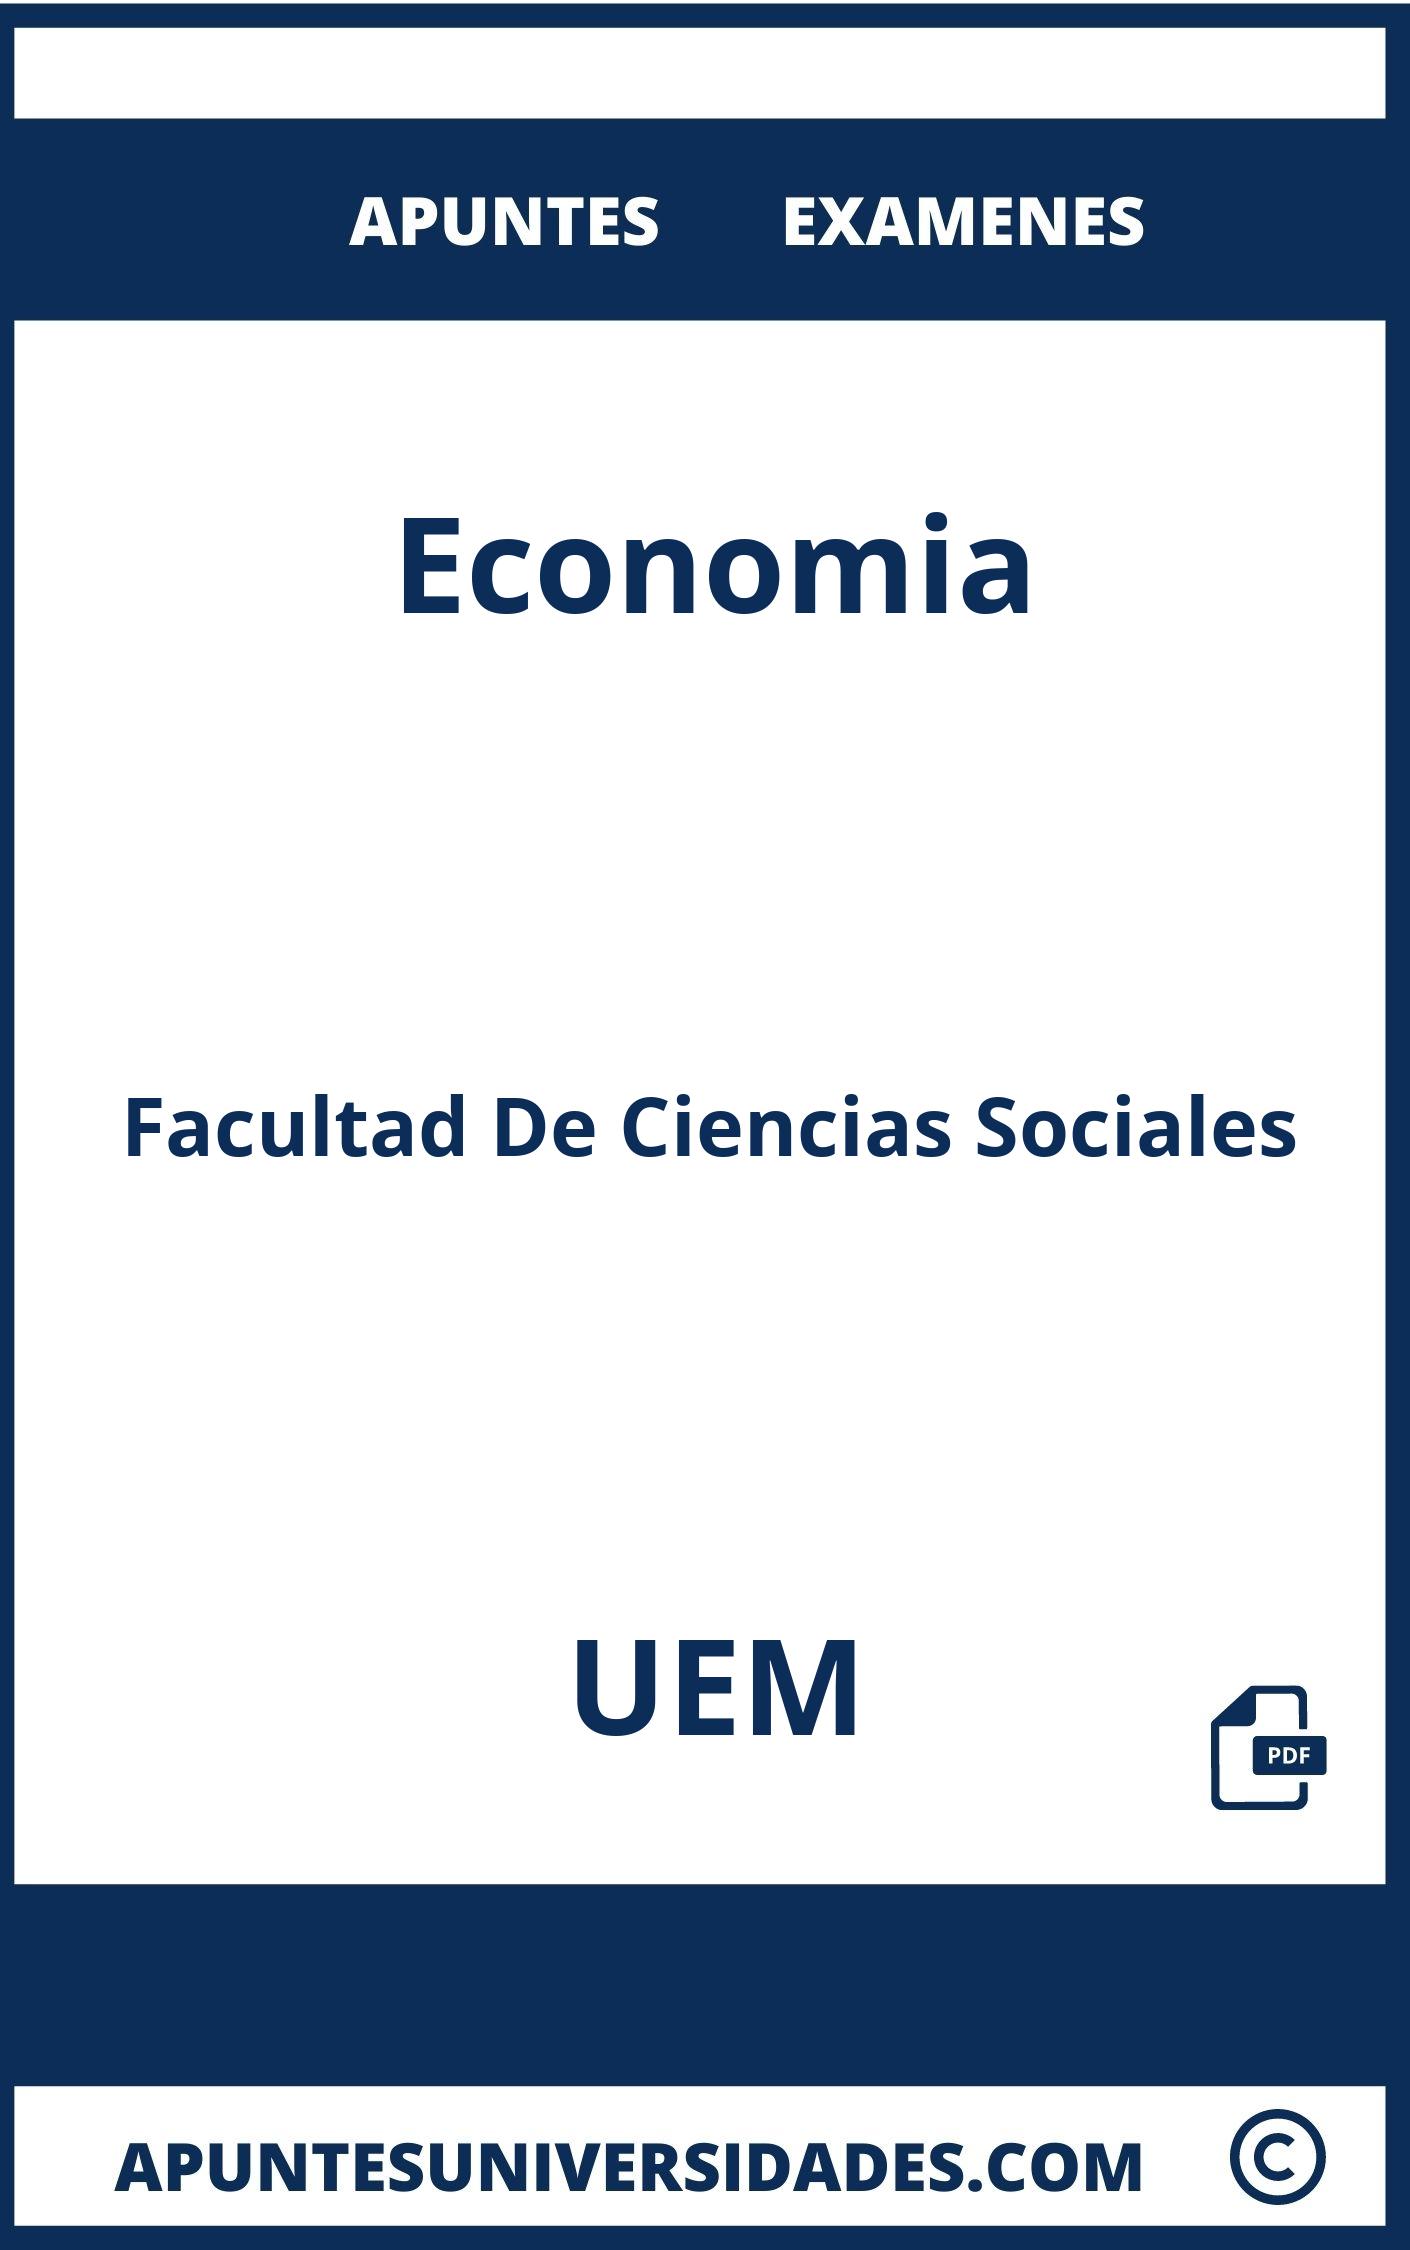 Apuntes y Examenes Economia UEM